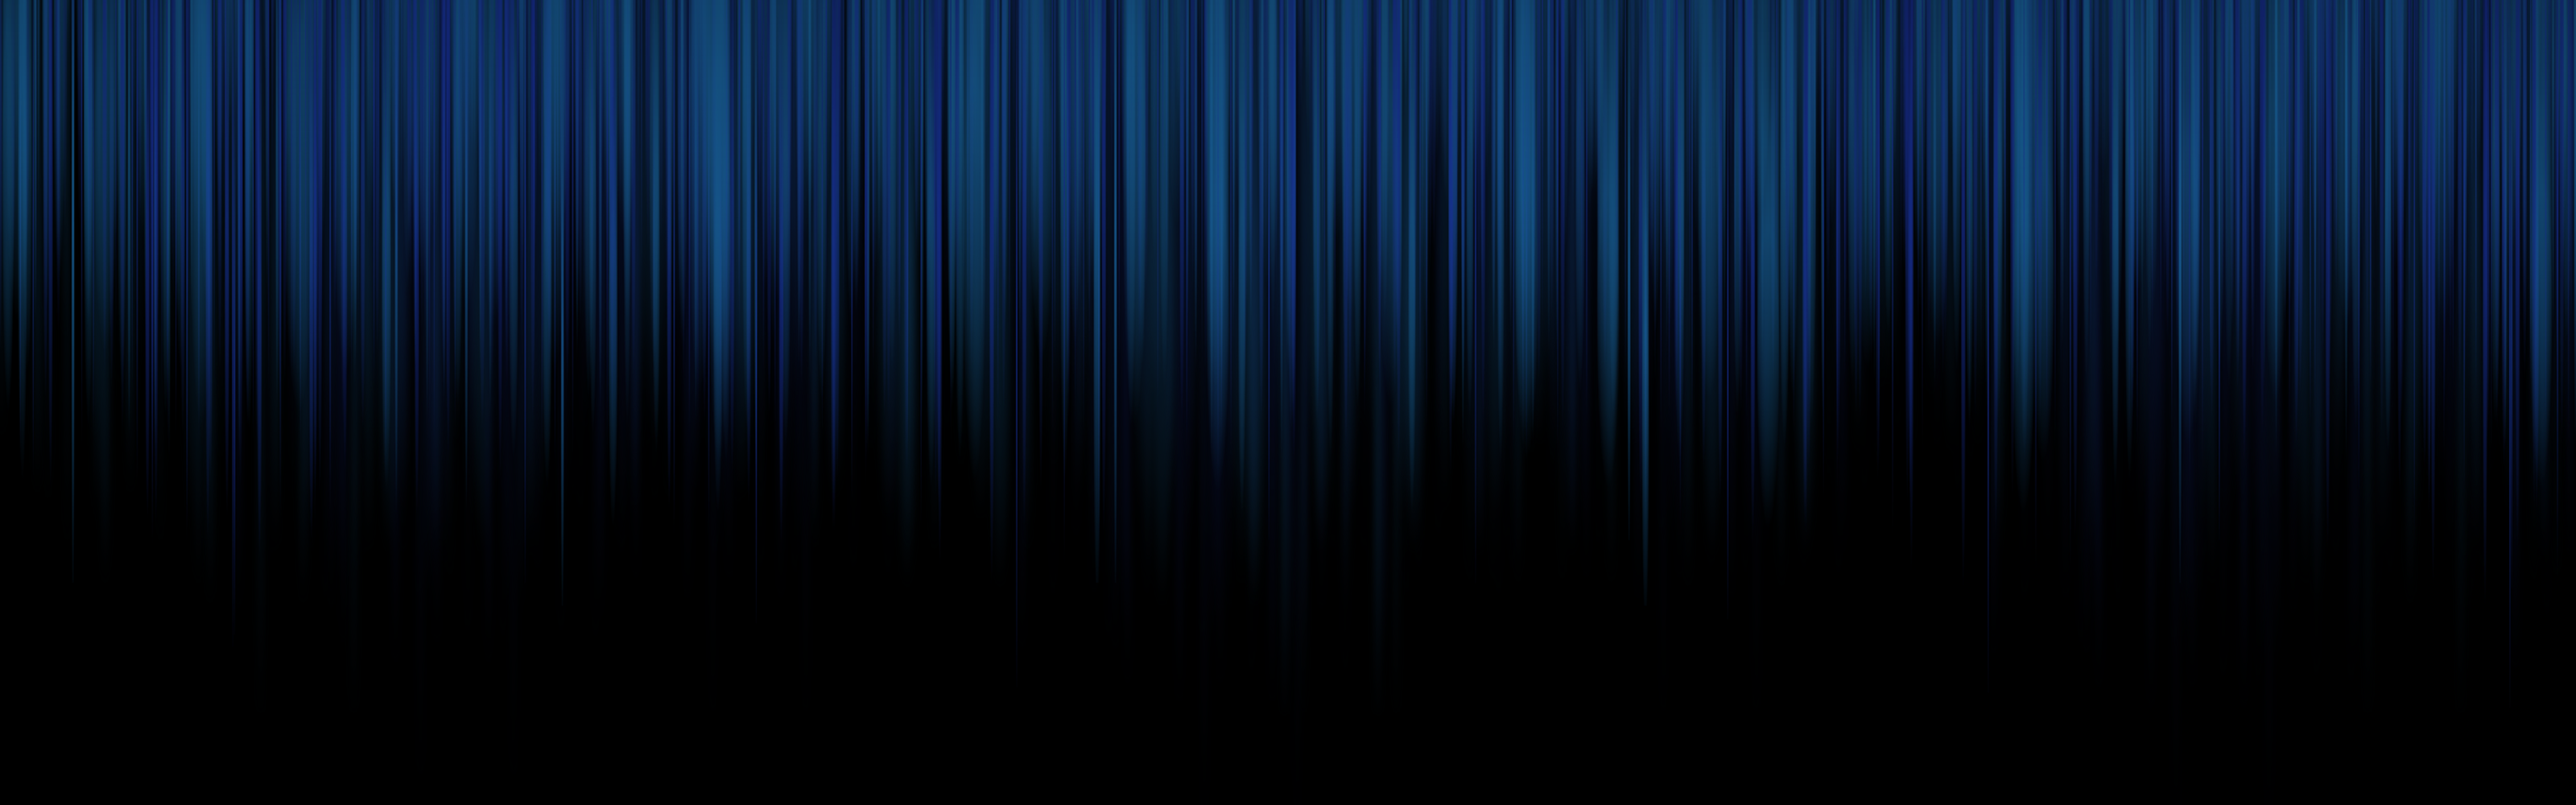 3200 x 900 tapete,blau,schwarz,elektrisches blau,kobaltblau,licht